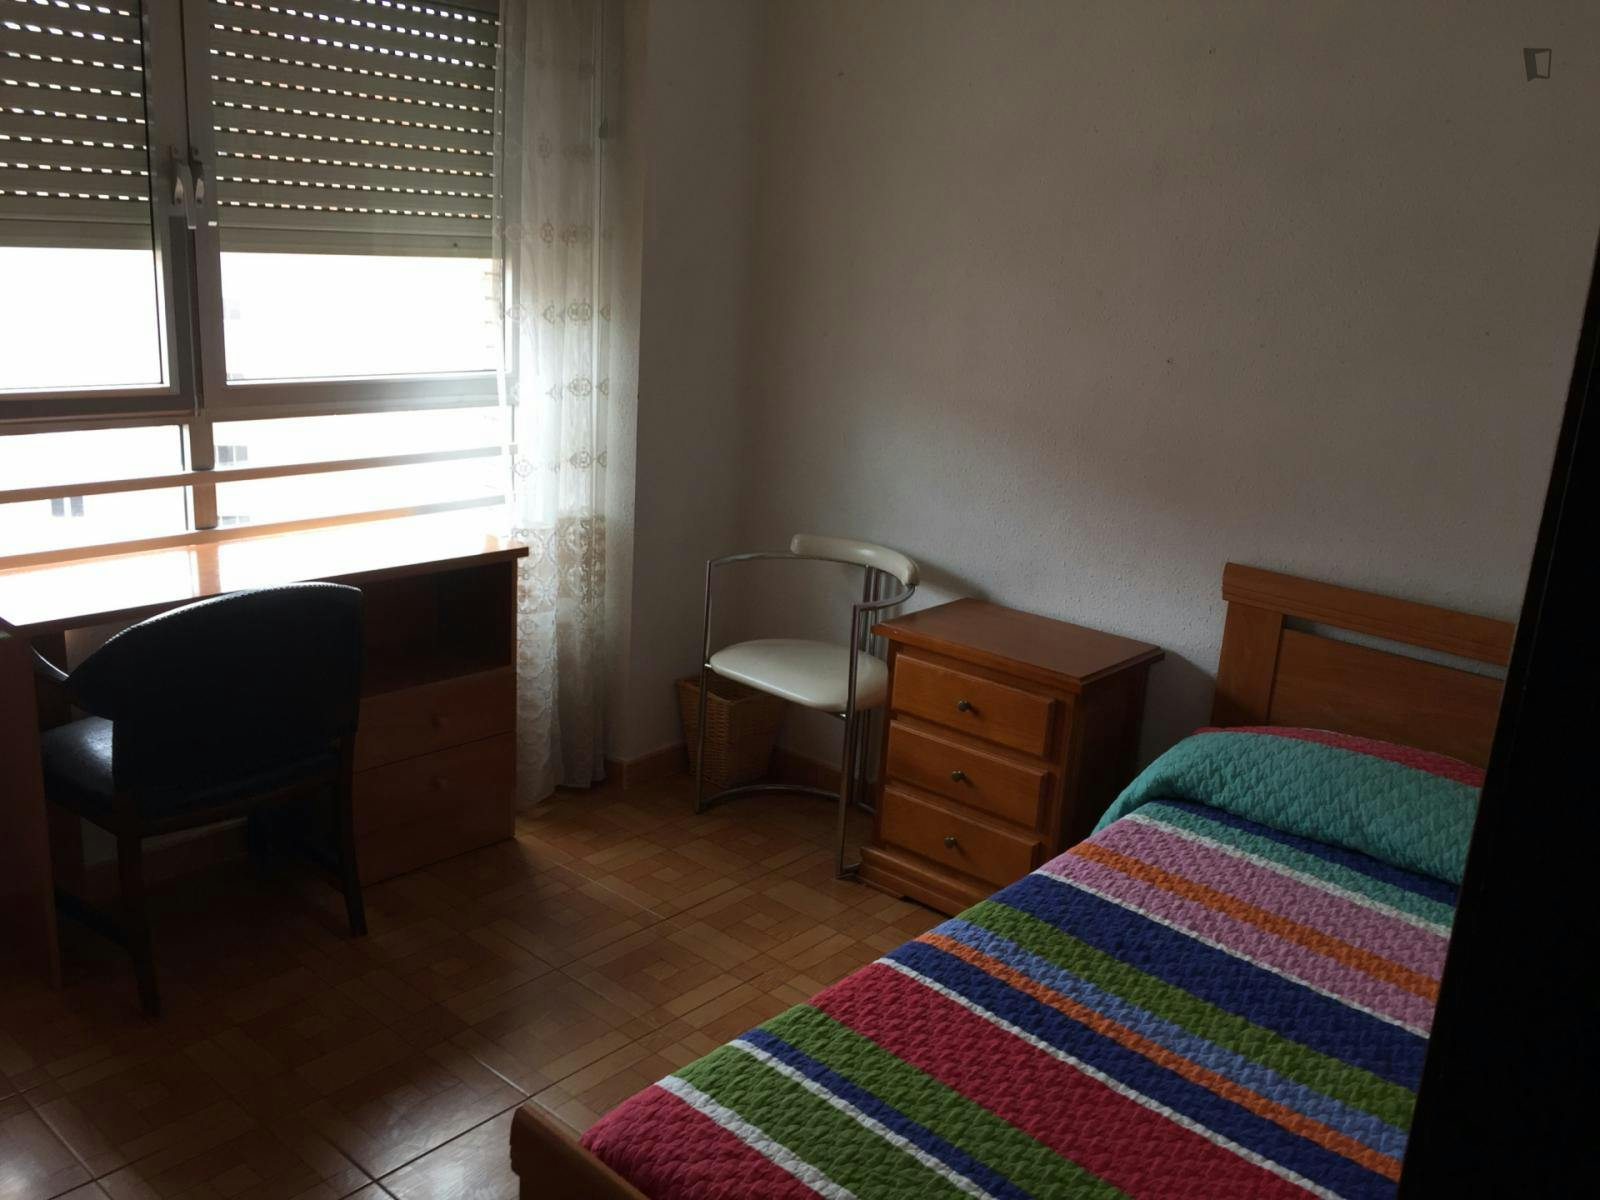 Comfy single bedroom in a 3-bedroom flat, near Universidad de Valladolid